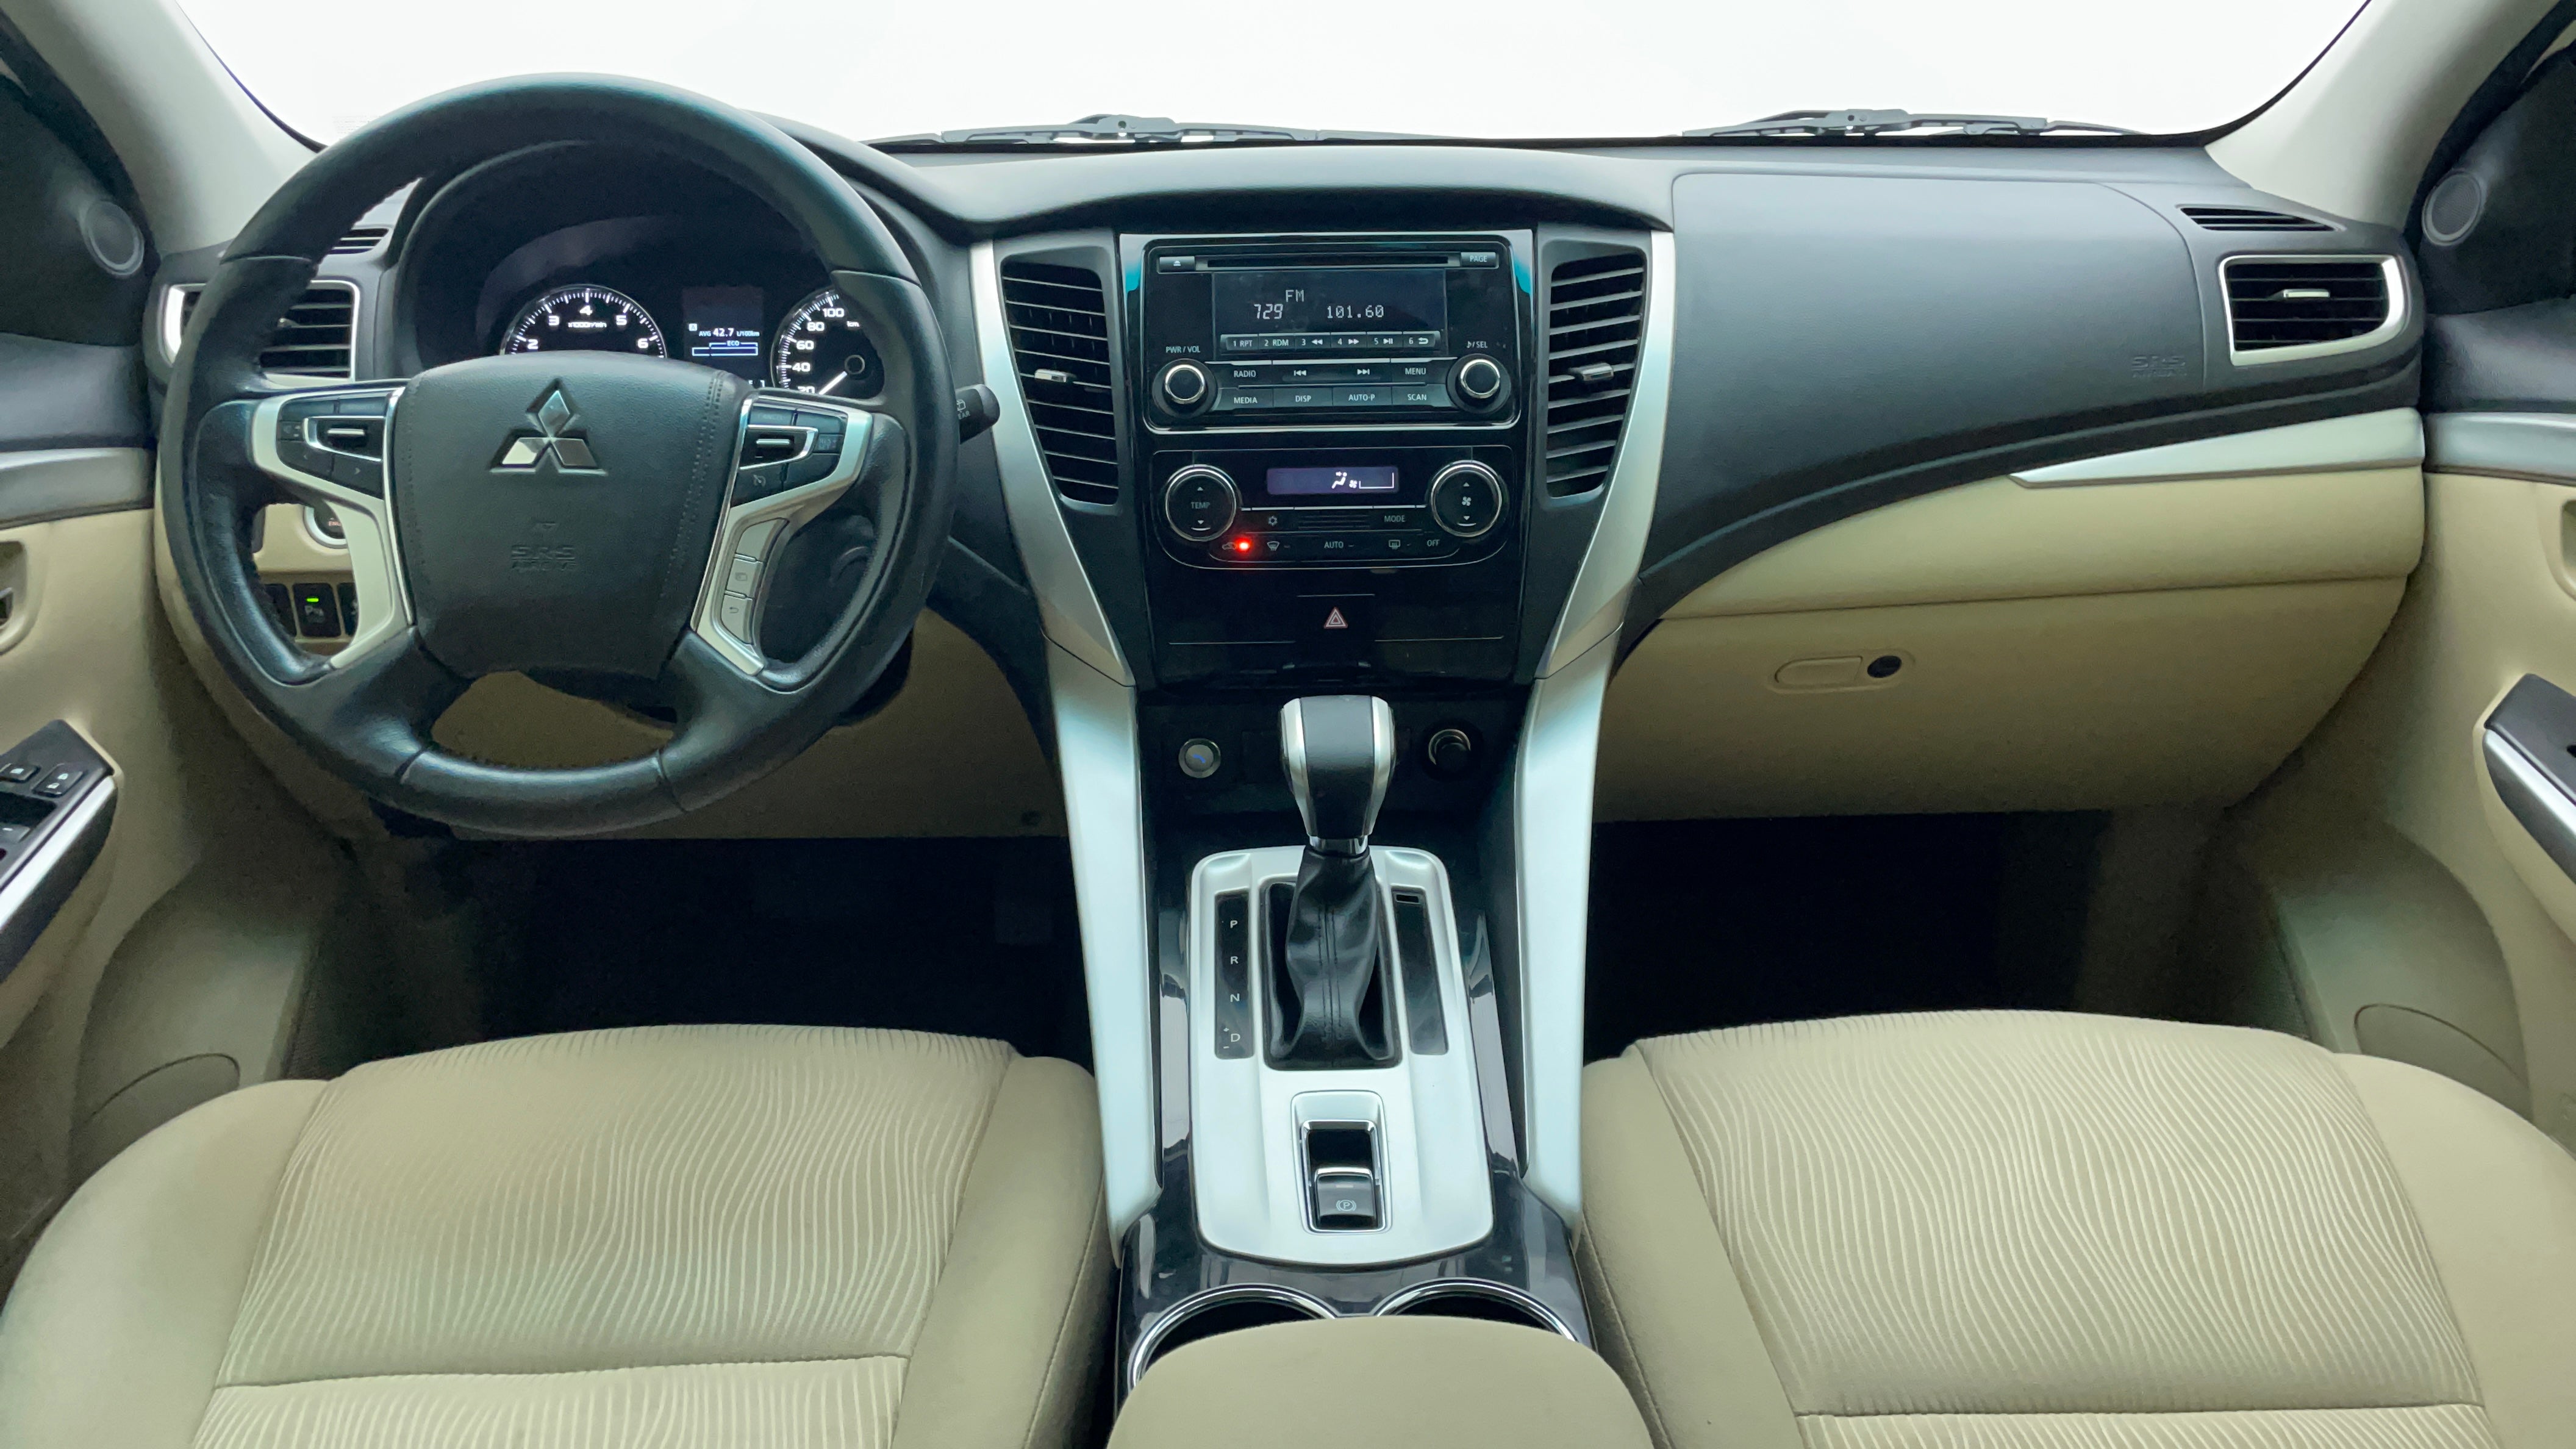 Mitsubishi Montero Sport-Dashboard View